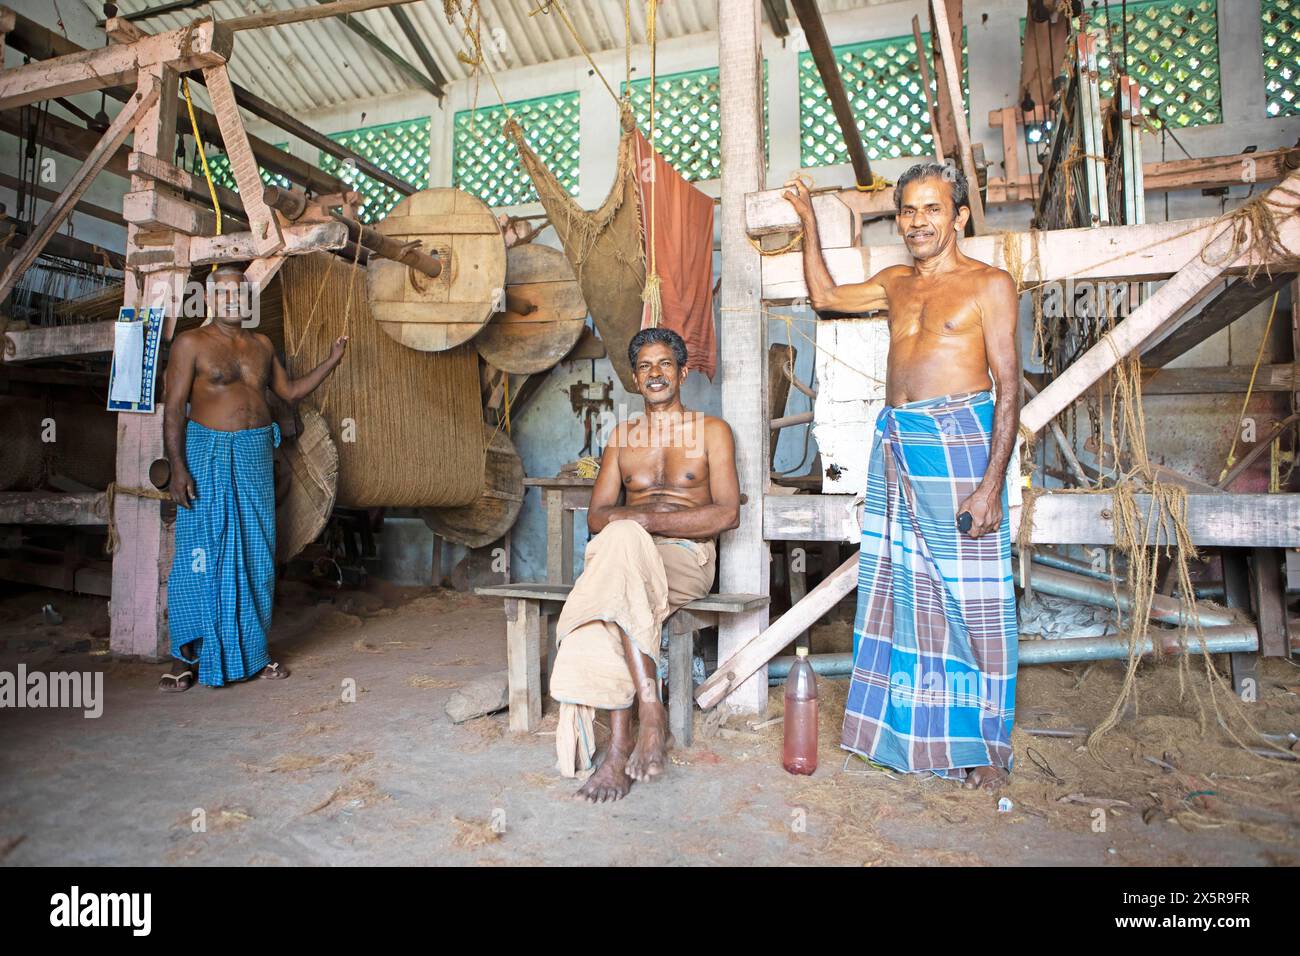 Ouvrier indien dans l'usine de tissage des ouvriers Coir Mats et Mattings coopération, production de tapis de coco, Muhamma, Alappuzha, Kerala, Inde Banque D'Images